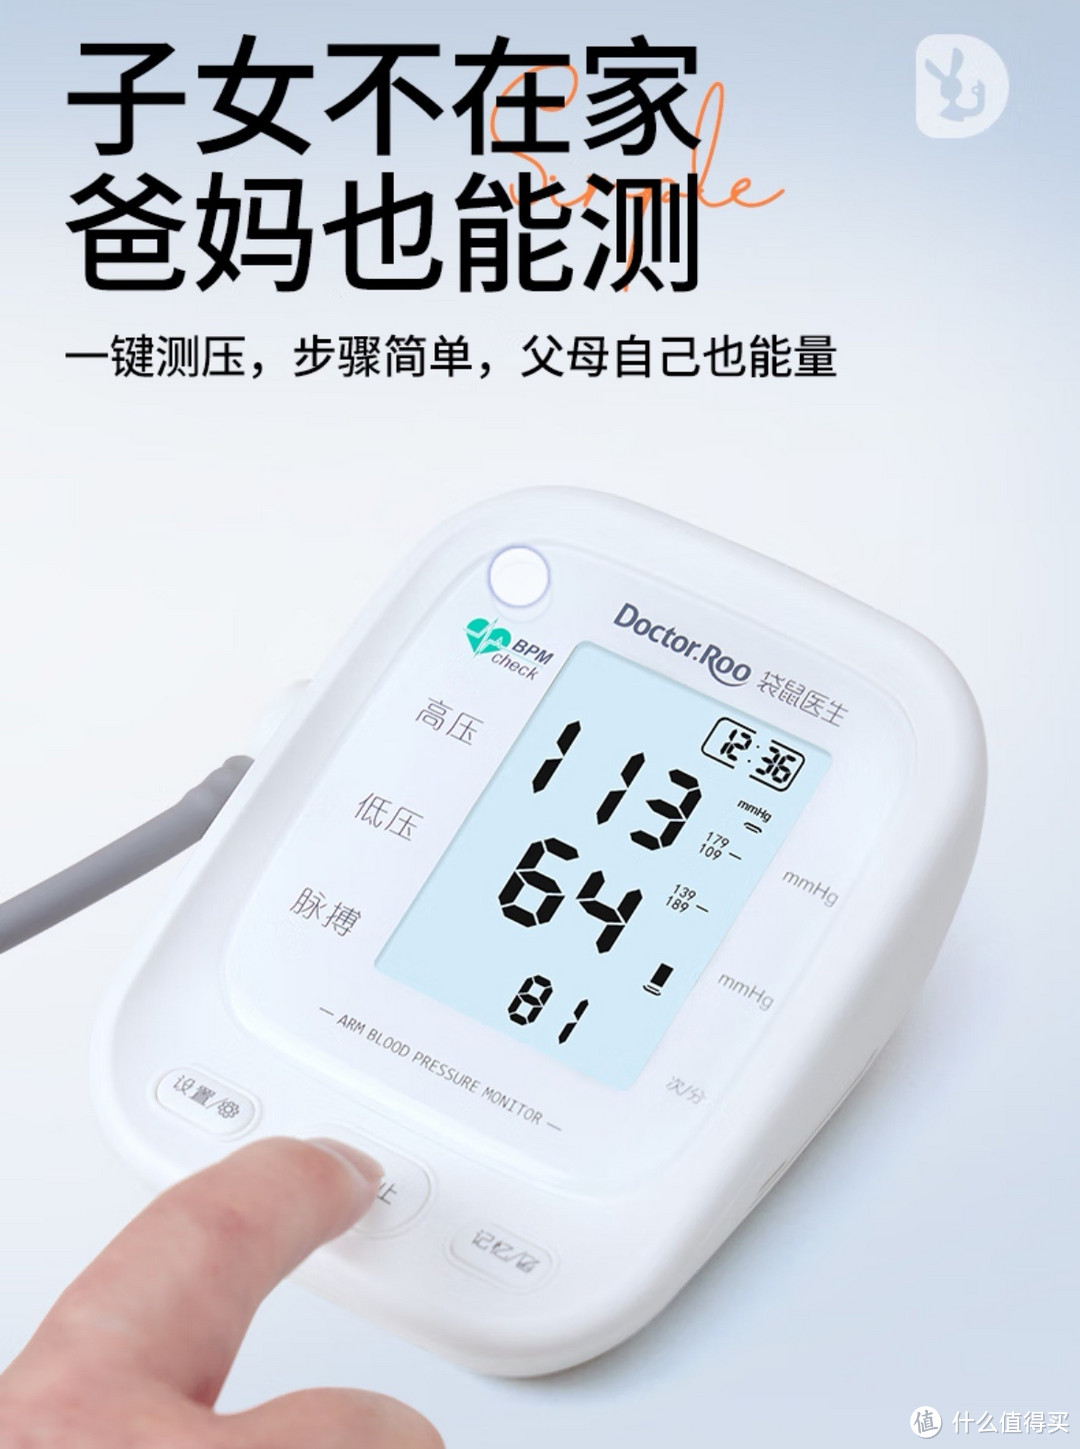 家中有高血压老人的可以备一台血压测量仪